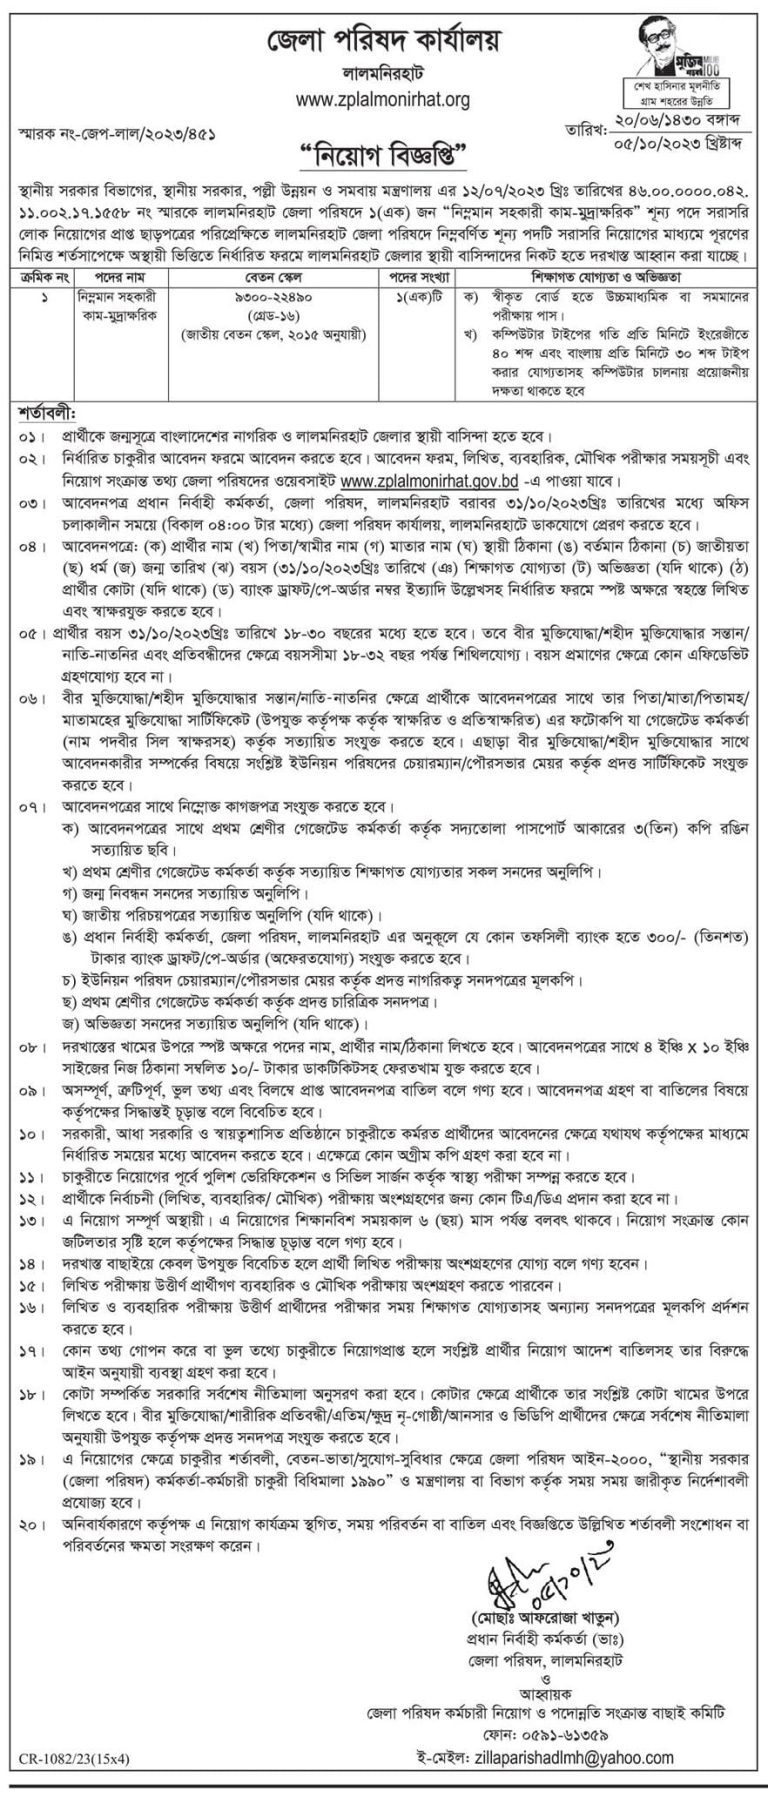 Lalmonirhat Zila Parishad Job circular 2023 PDF/Image